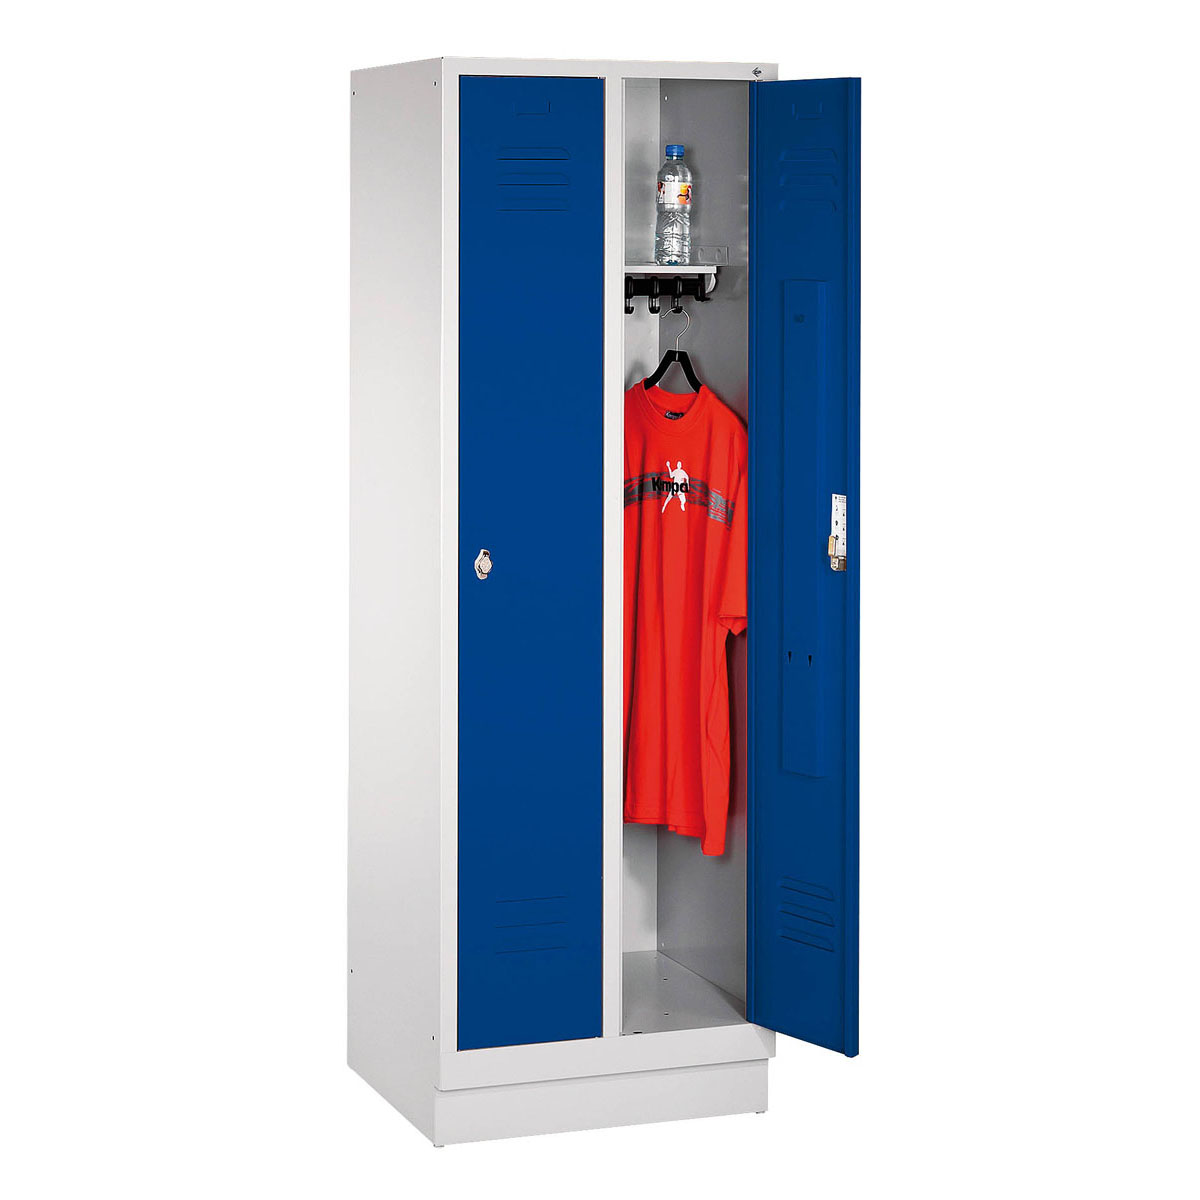 Garderobenschrank mit Sockel, rechts angeschlagene Türen